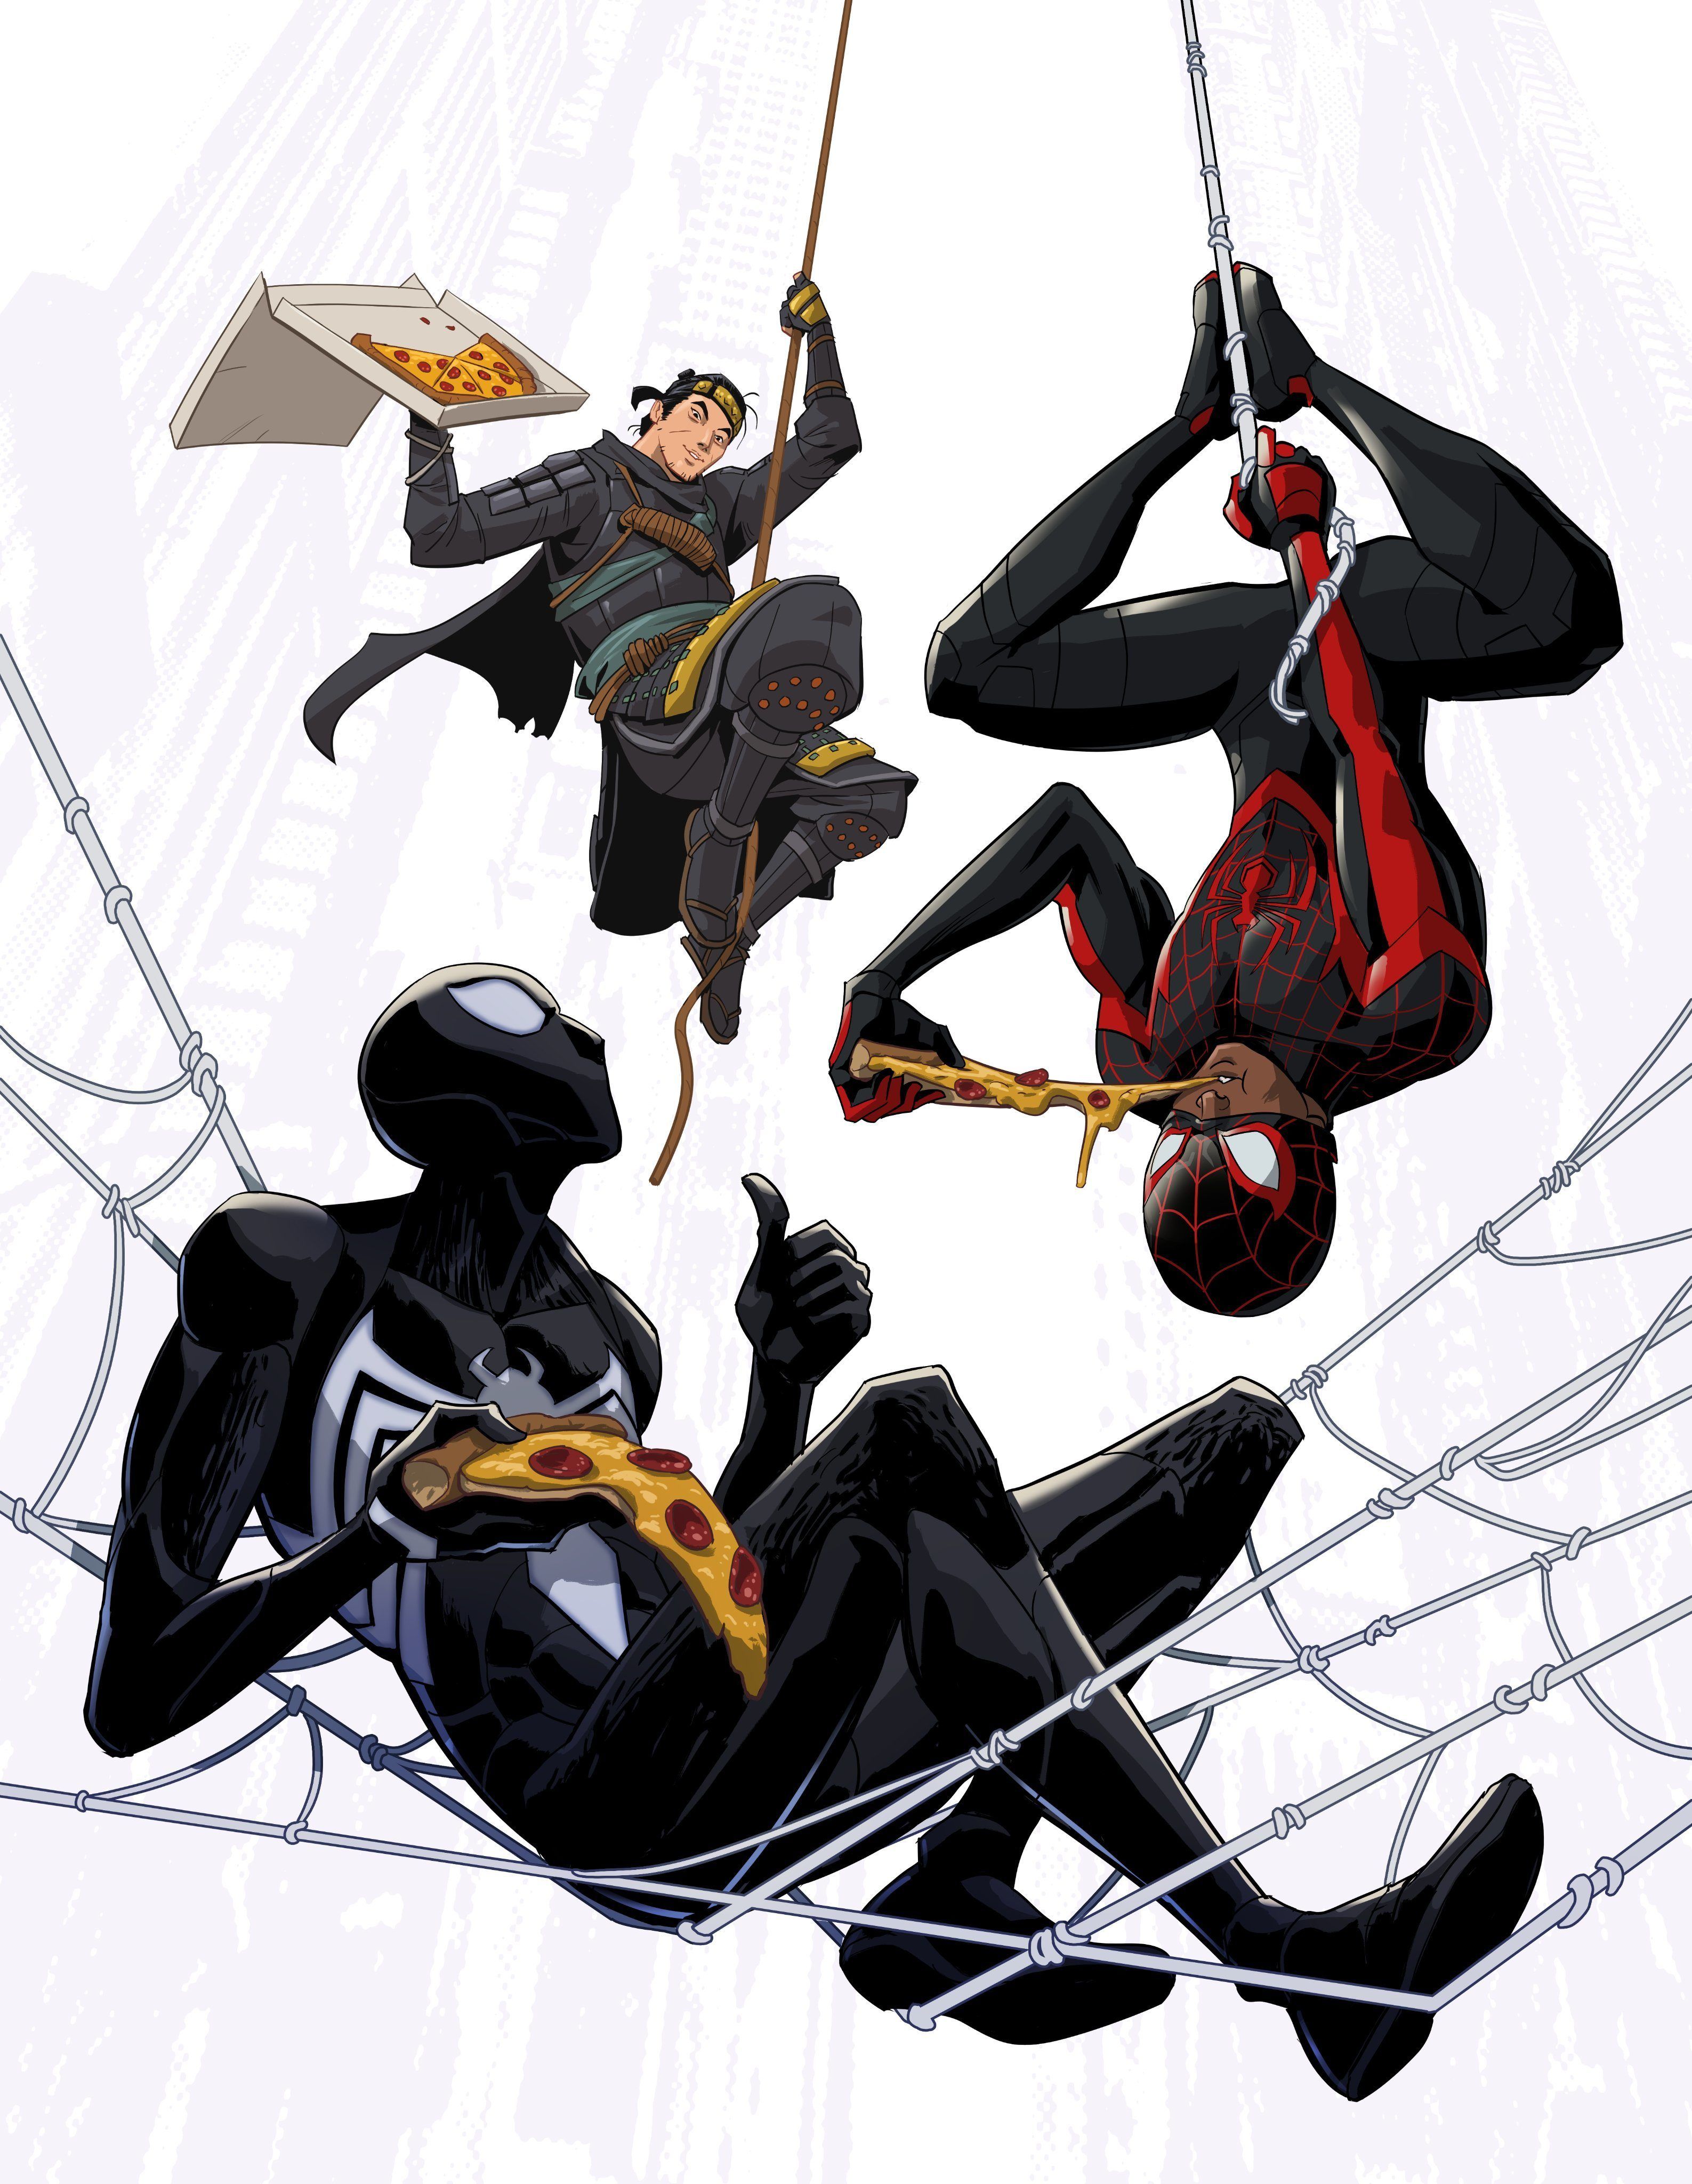 Элой и Кратос веселяться с Пауками: Студии Sony поделились артами в честь релиза Marvel's Spider-Man 2 |2